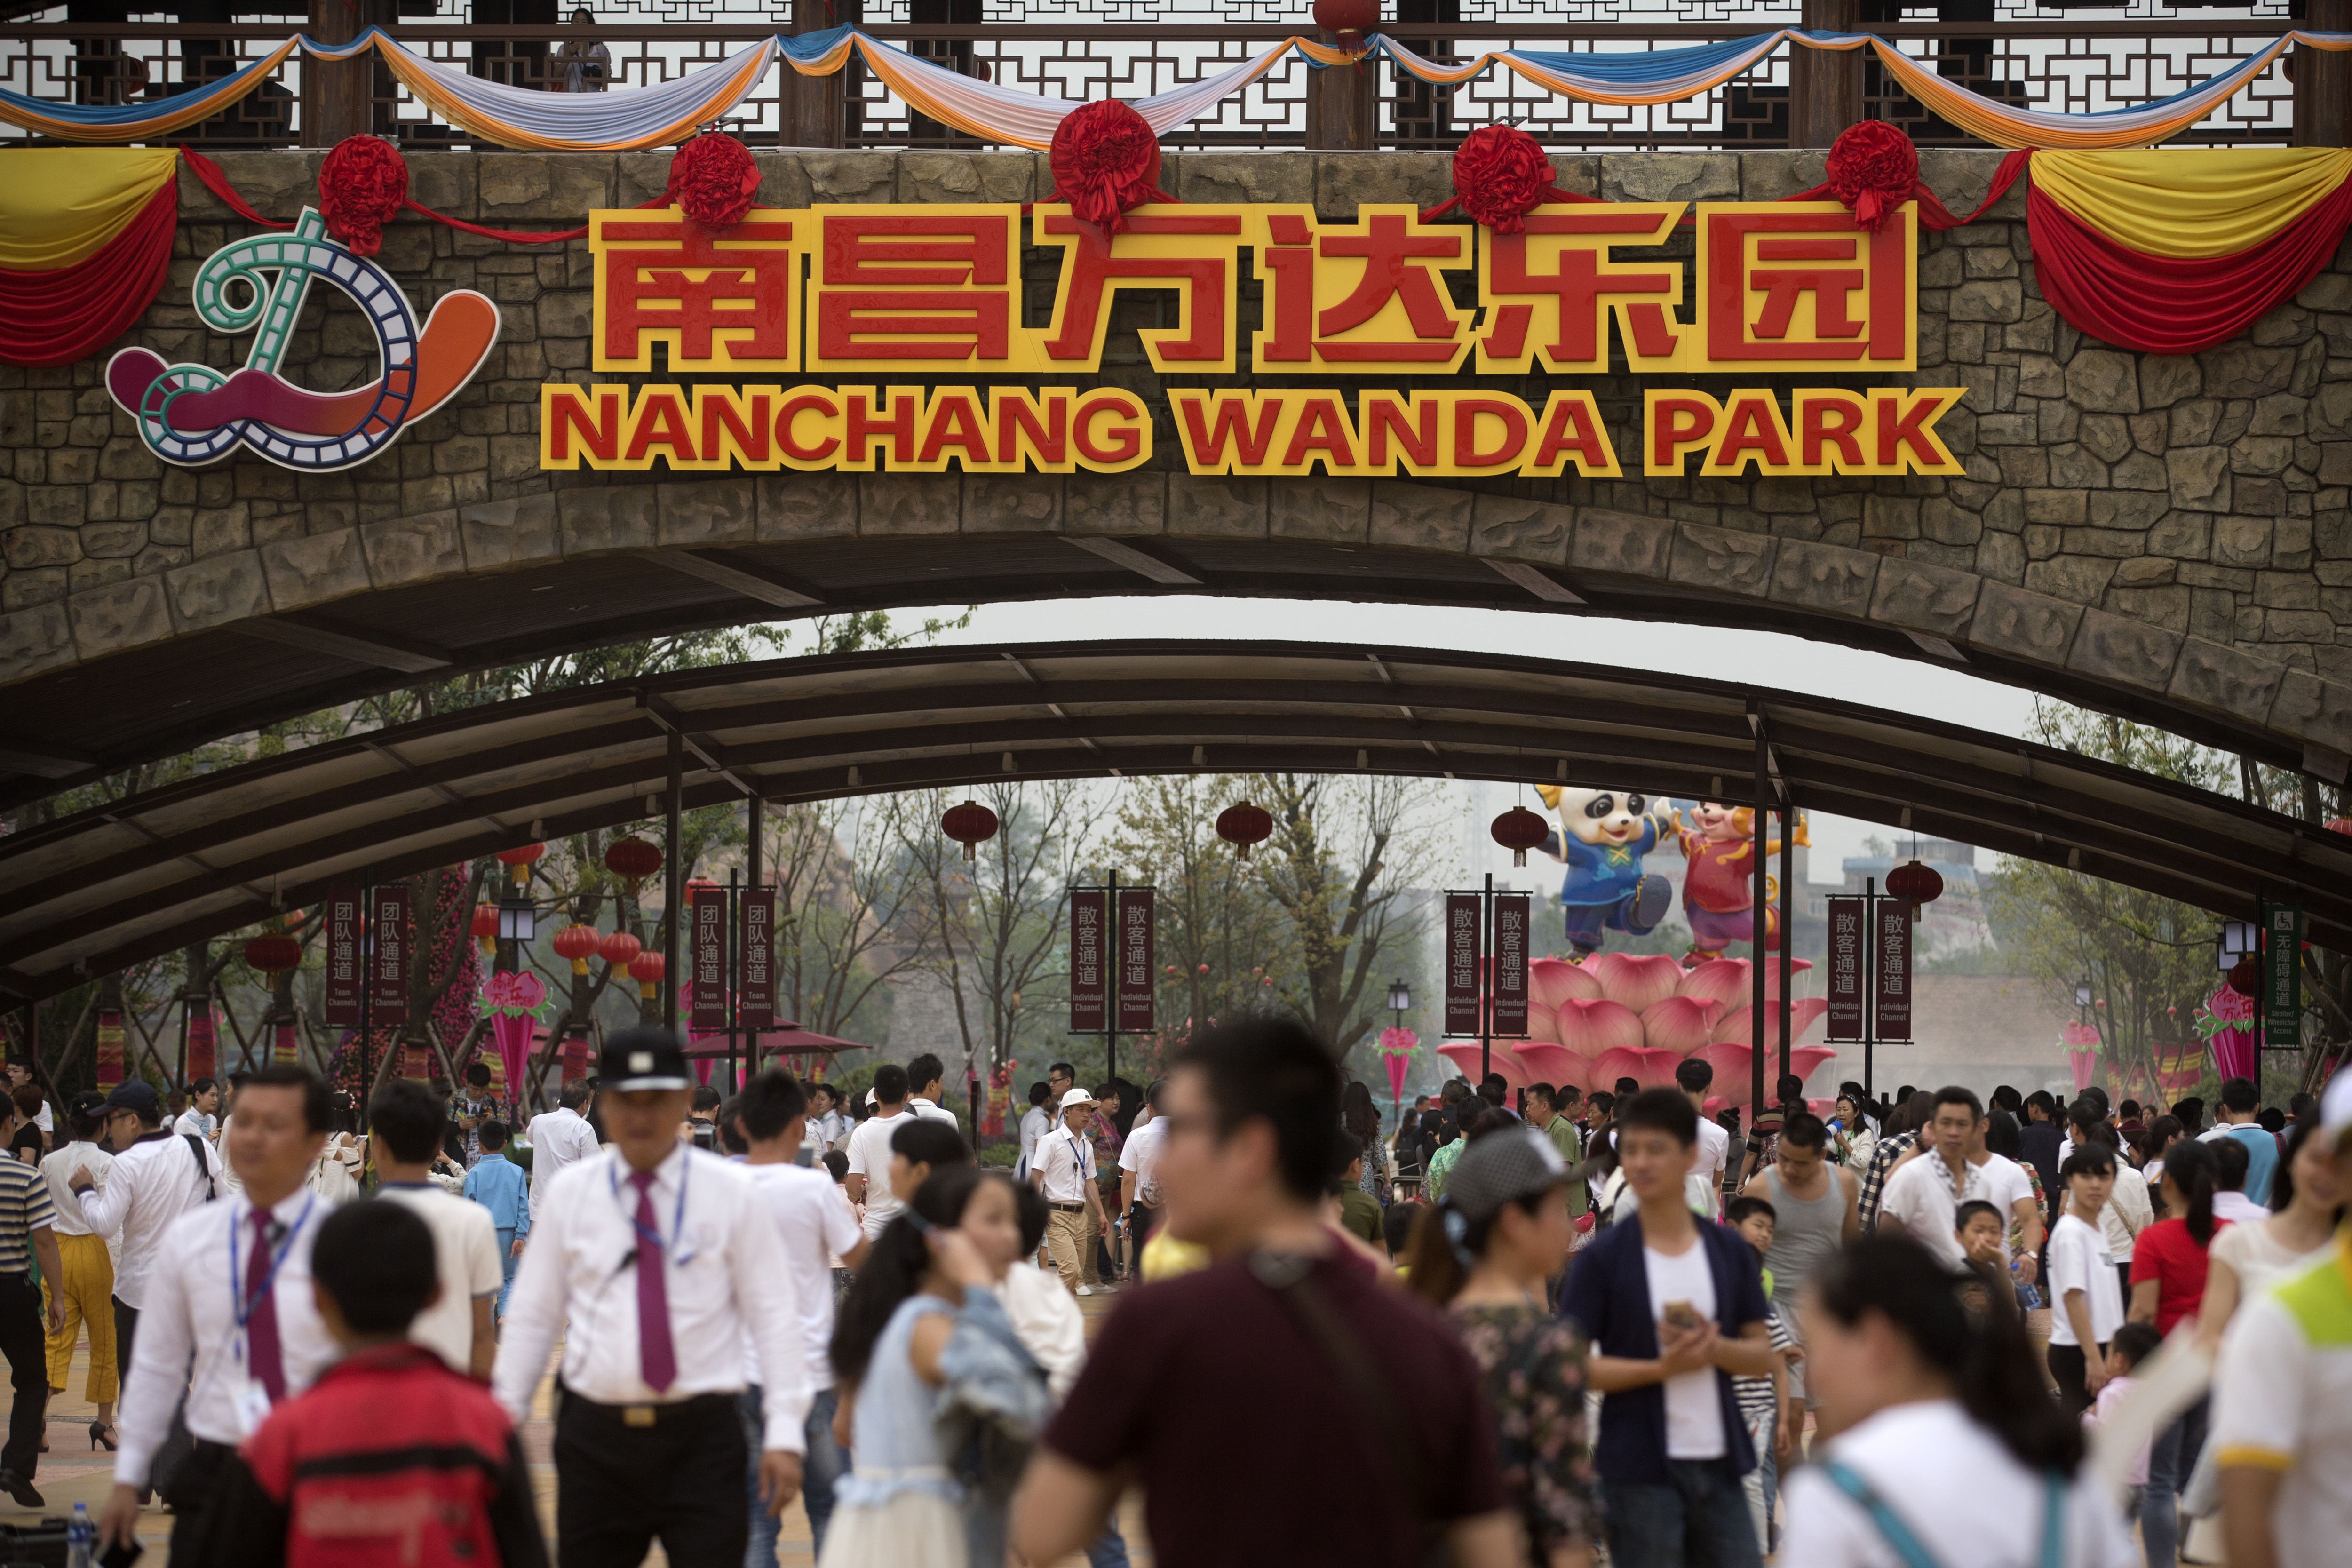  Disney prepara demanda en contra de parque chino que usó sus personajes